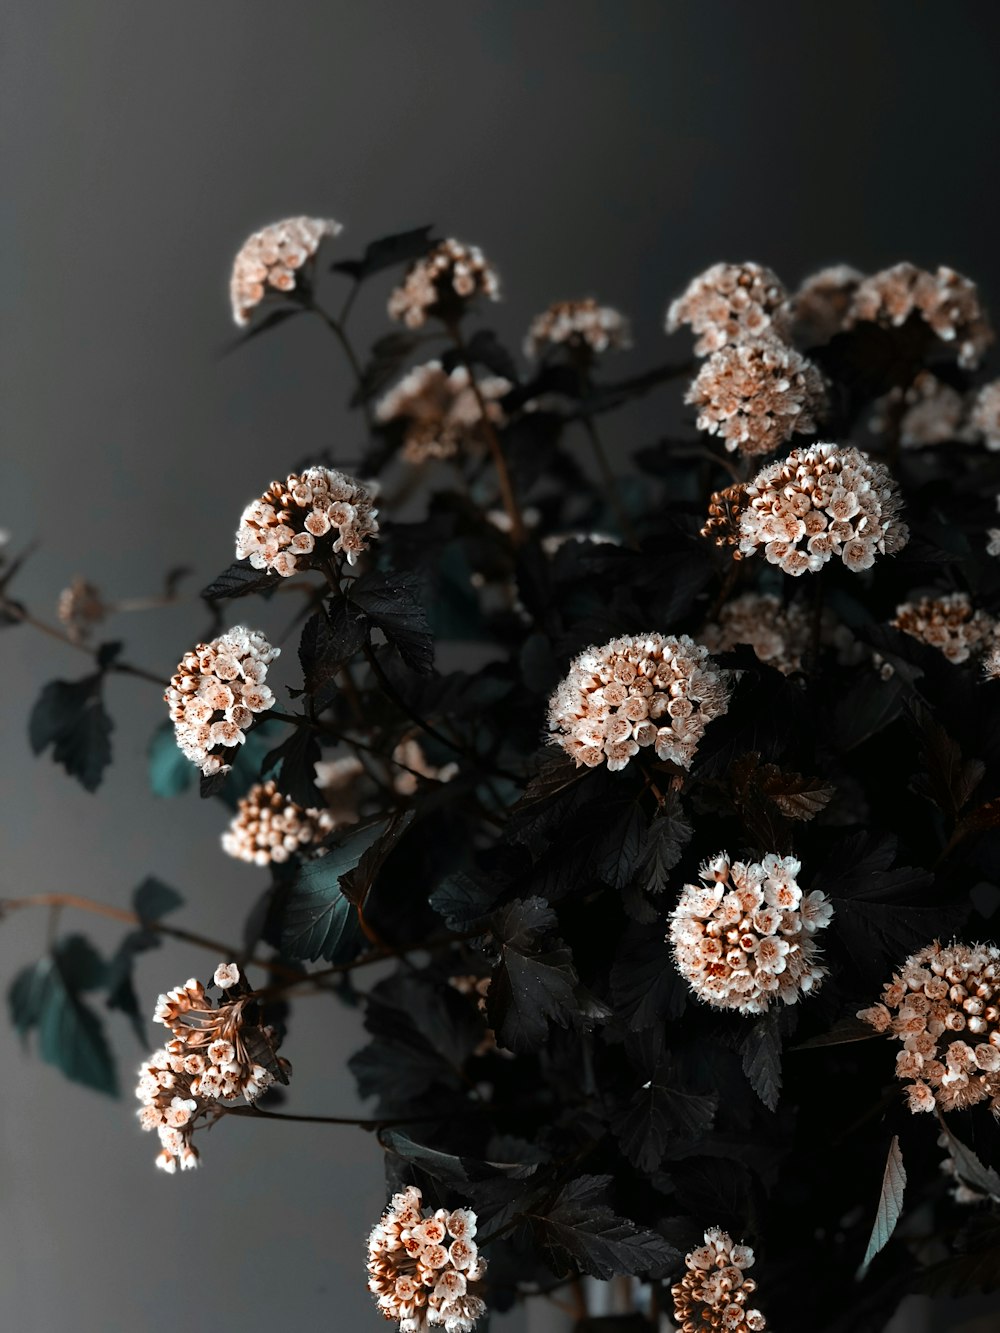 white and brown flowers in tilt shift lens